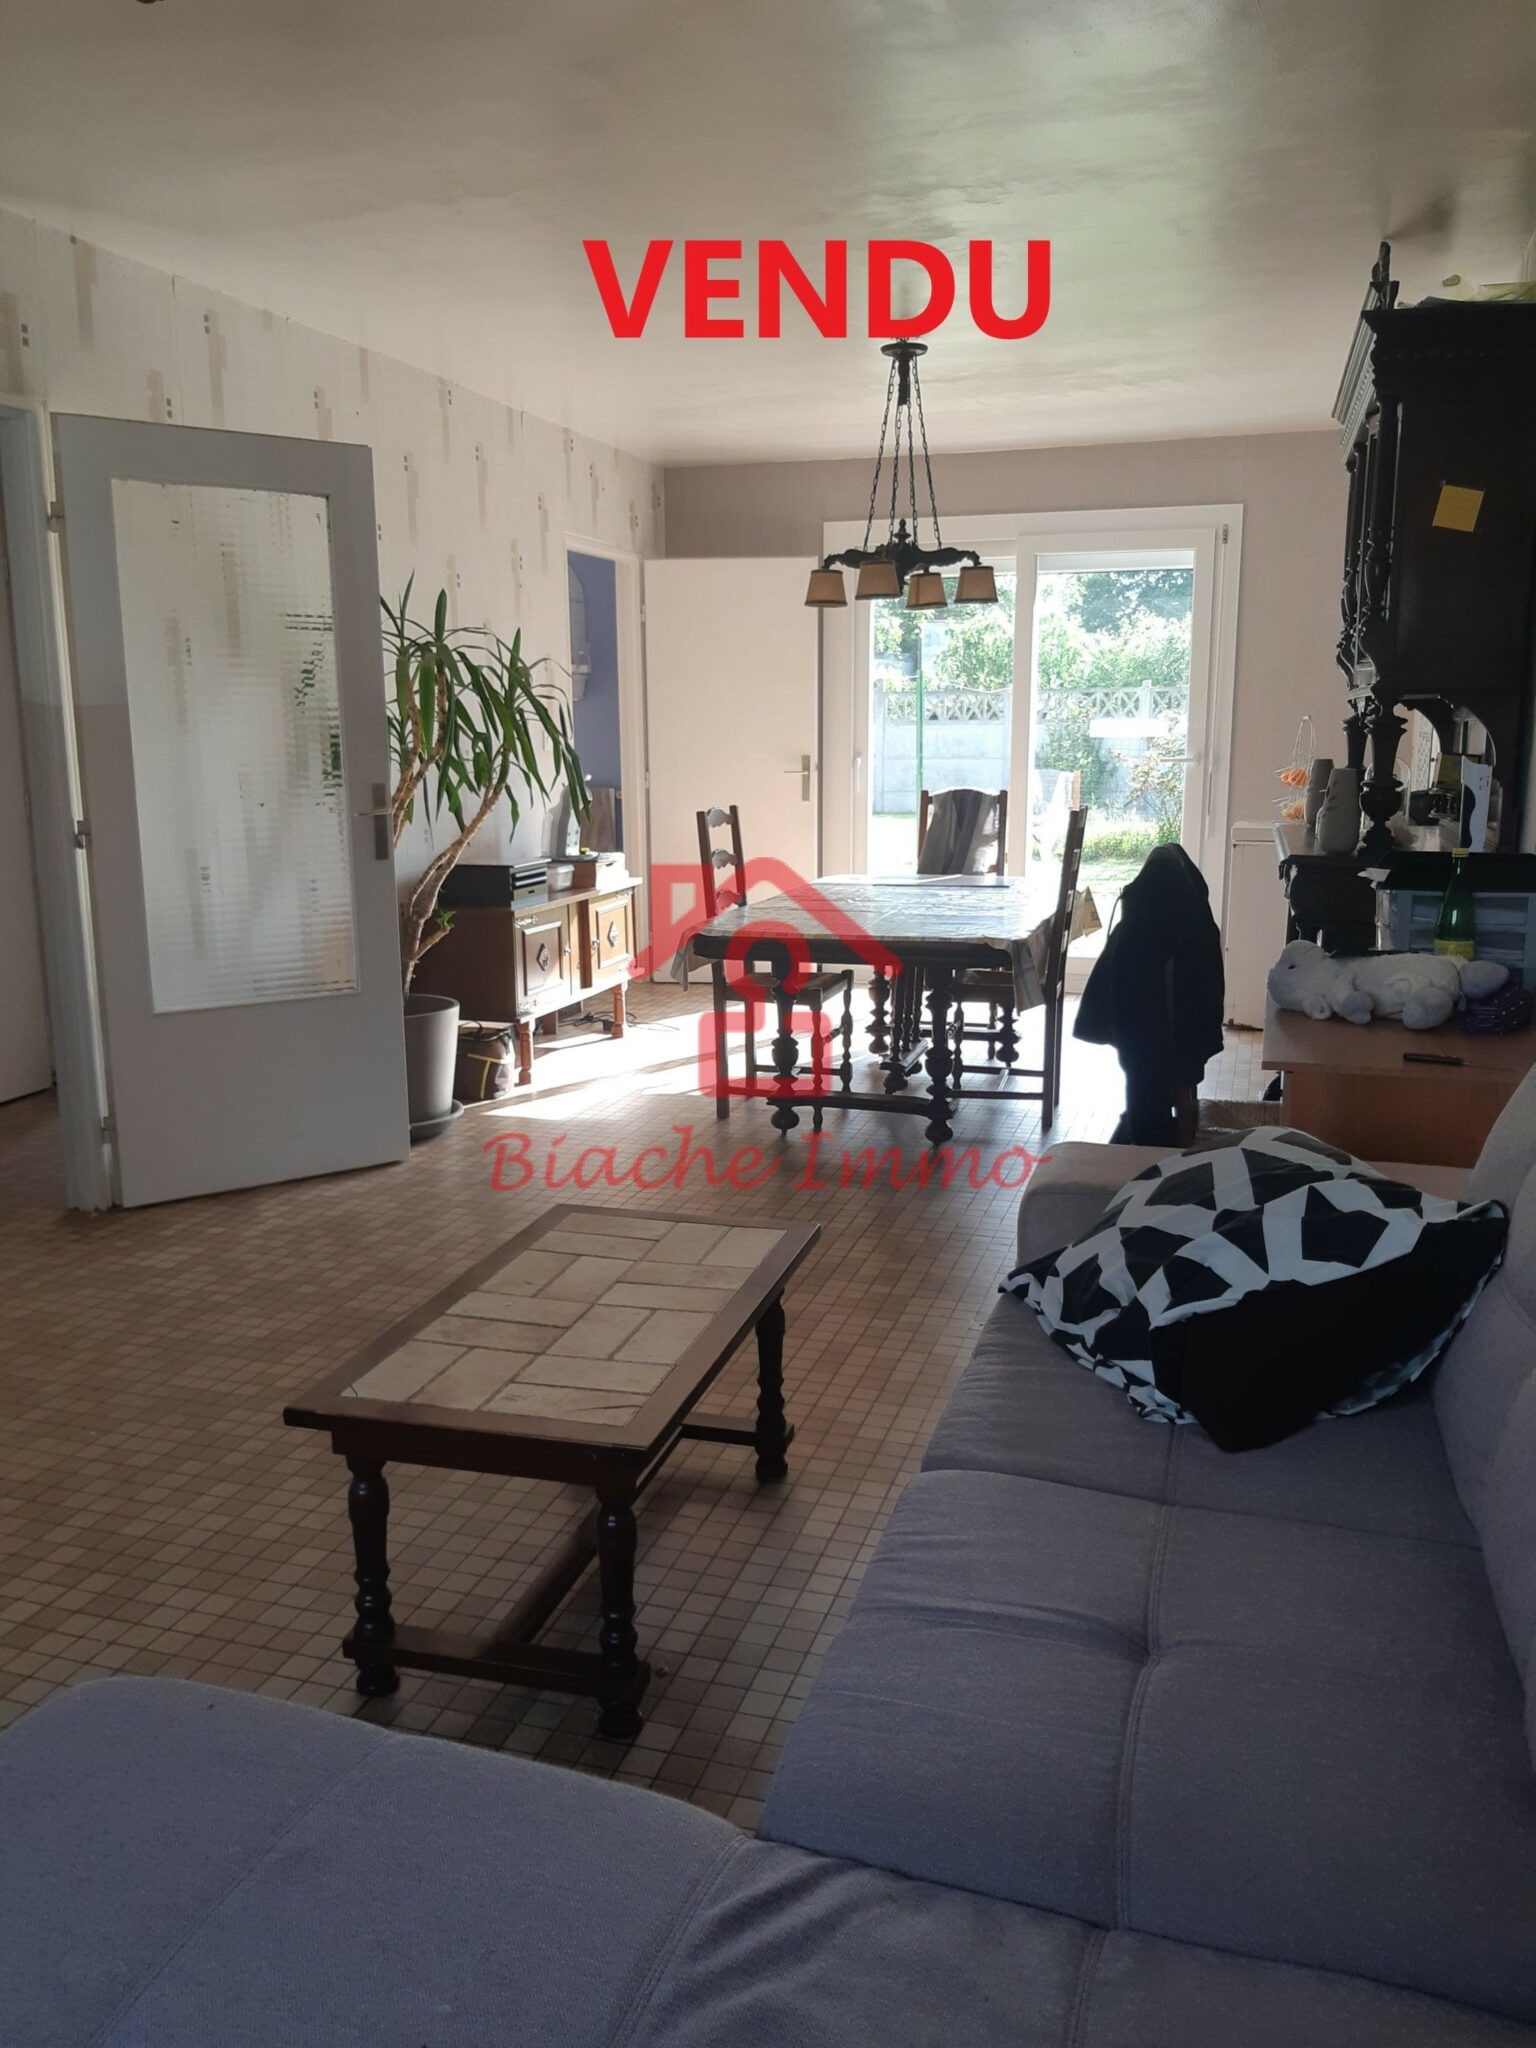 VENDUE – Vitry-En-Artois, maison 3 chambres secteur calme